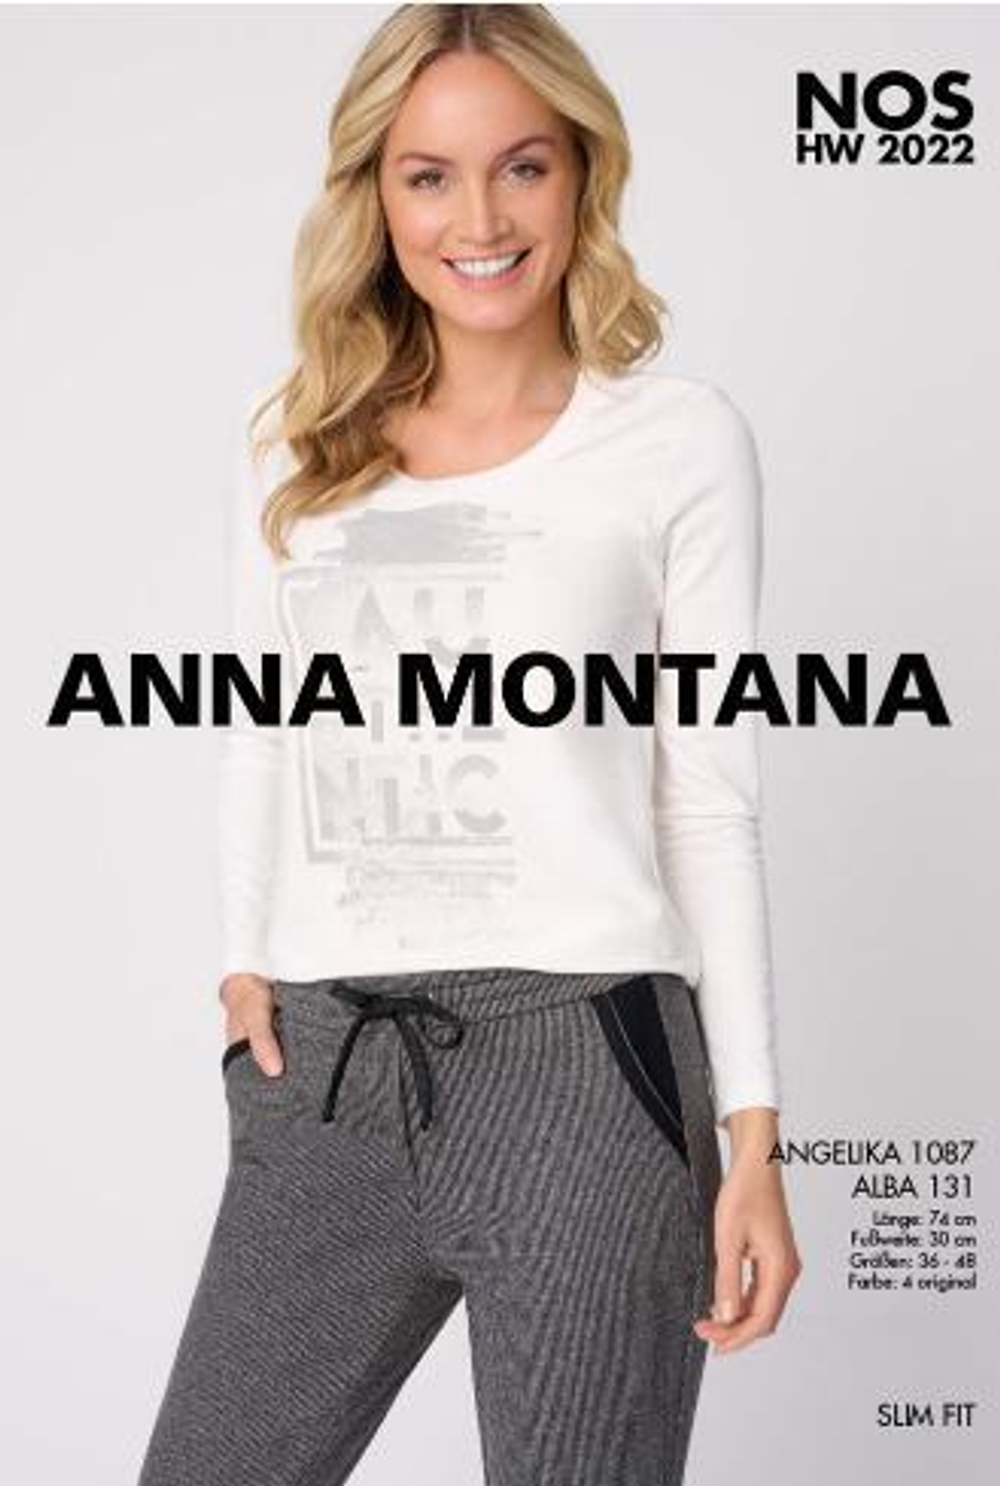 Брюки Anna Montana 1087 Angelika Alba